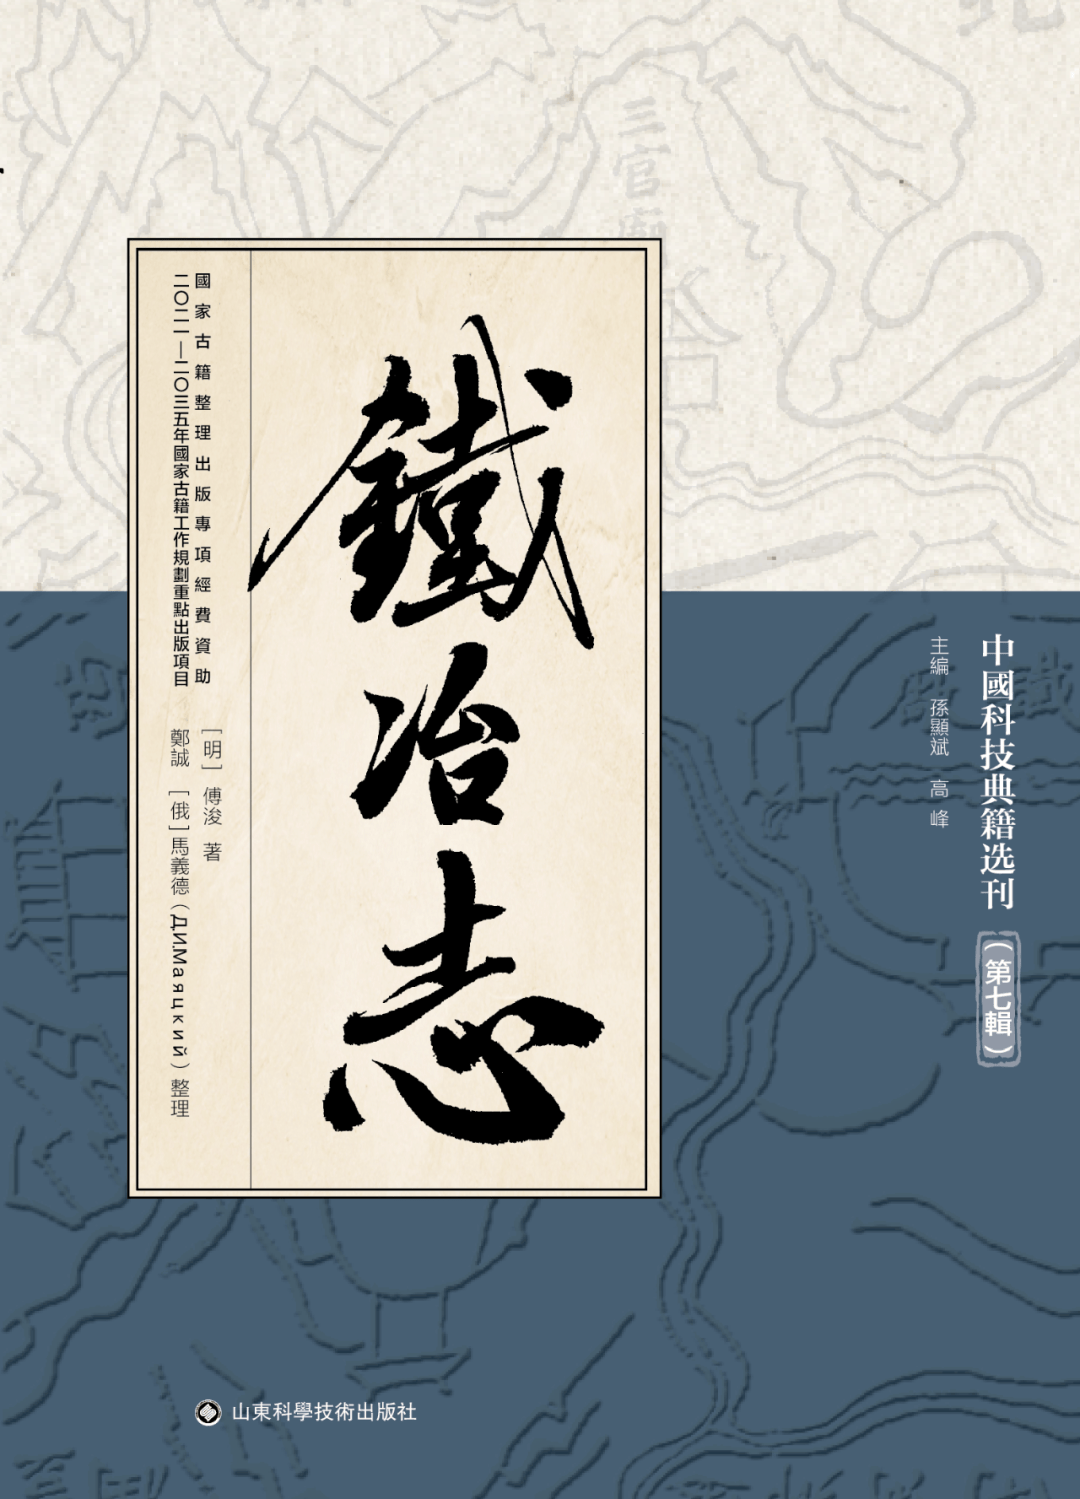 新书丨《中国科技典籍选刊》第七辑出版